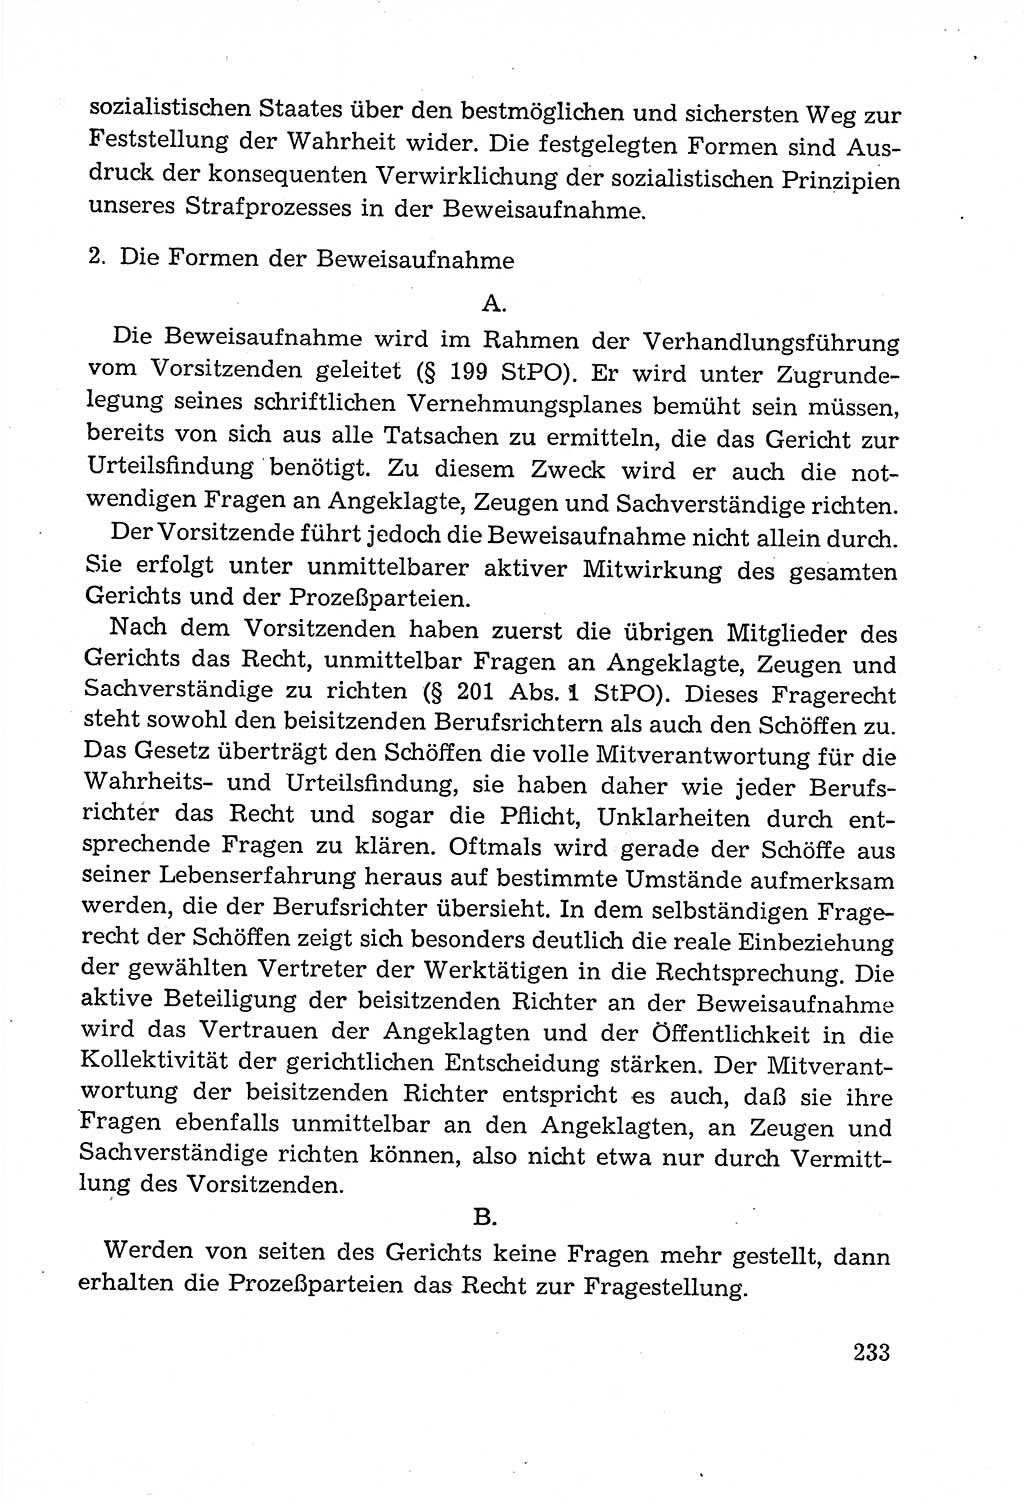 Leitfaden des Strafprozeßrechts der Deutschen Demokratischen Republik (DDR) 1959, Seite 233 (LF StPR DDR 1959, S. 233)